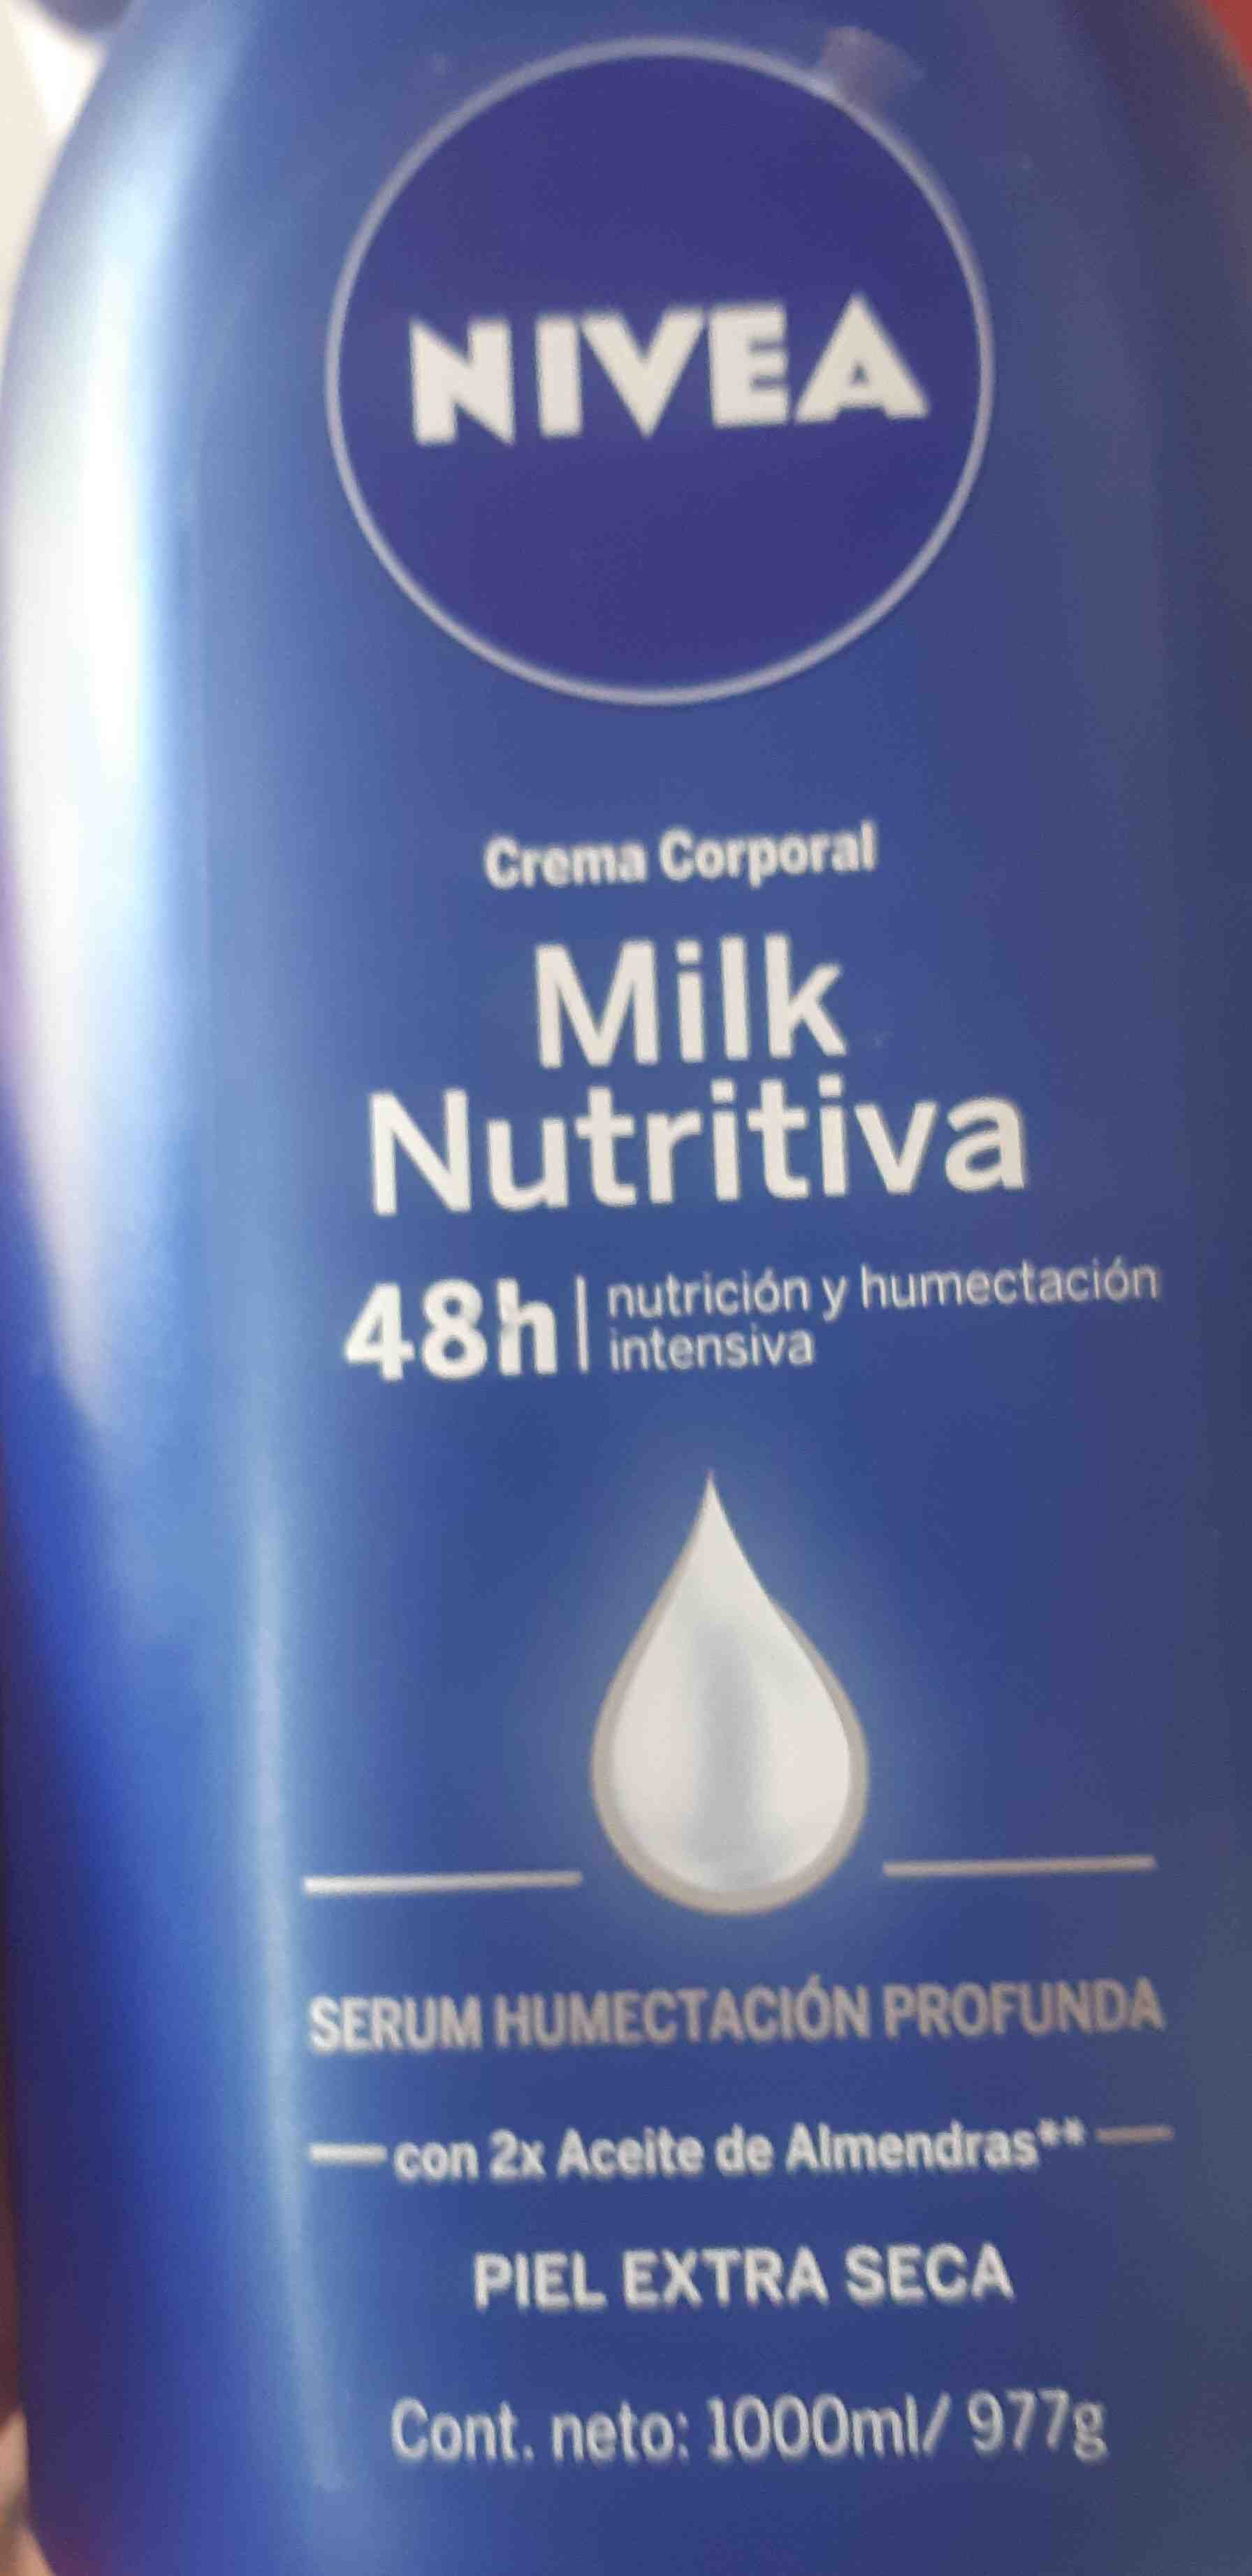 Milk nutritiva - 製品 - en